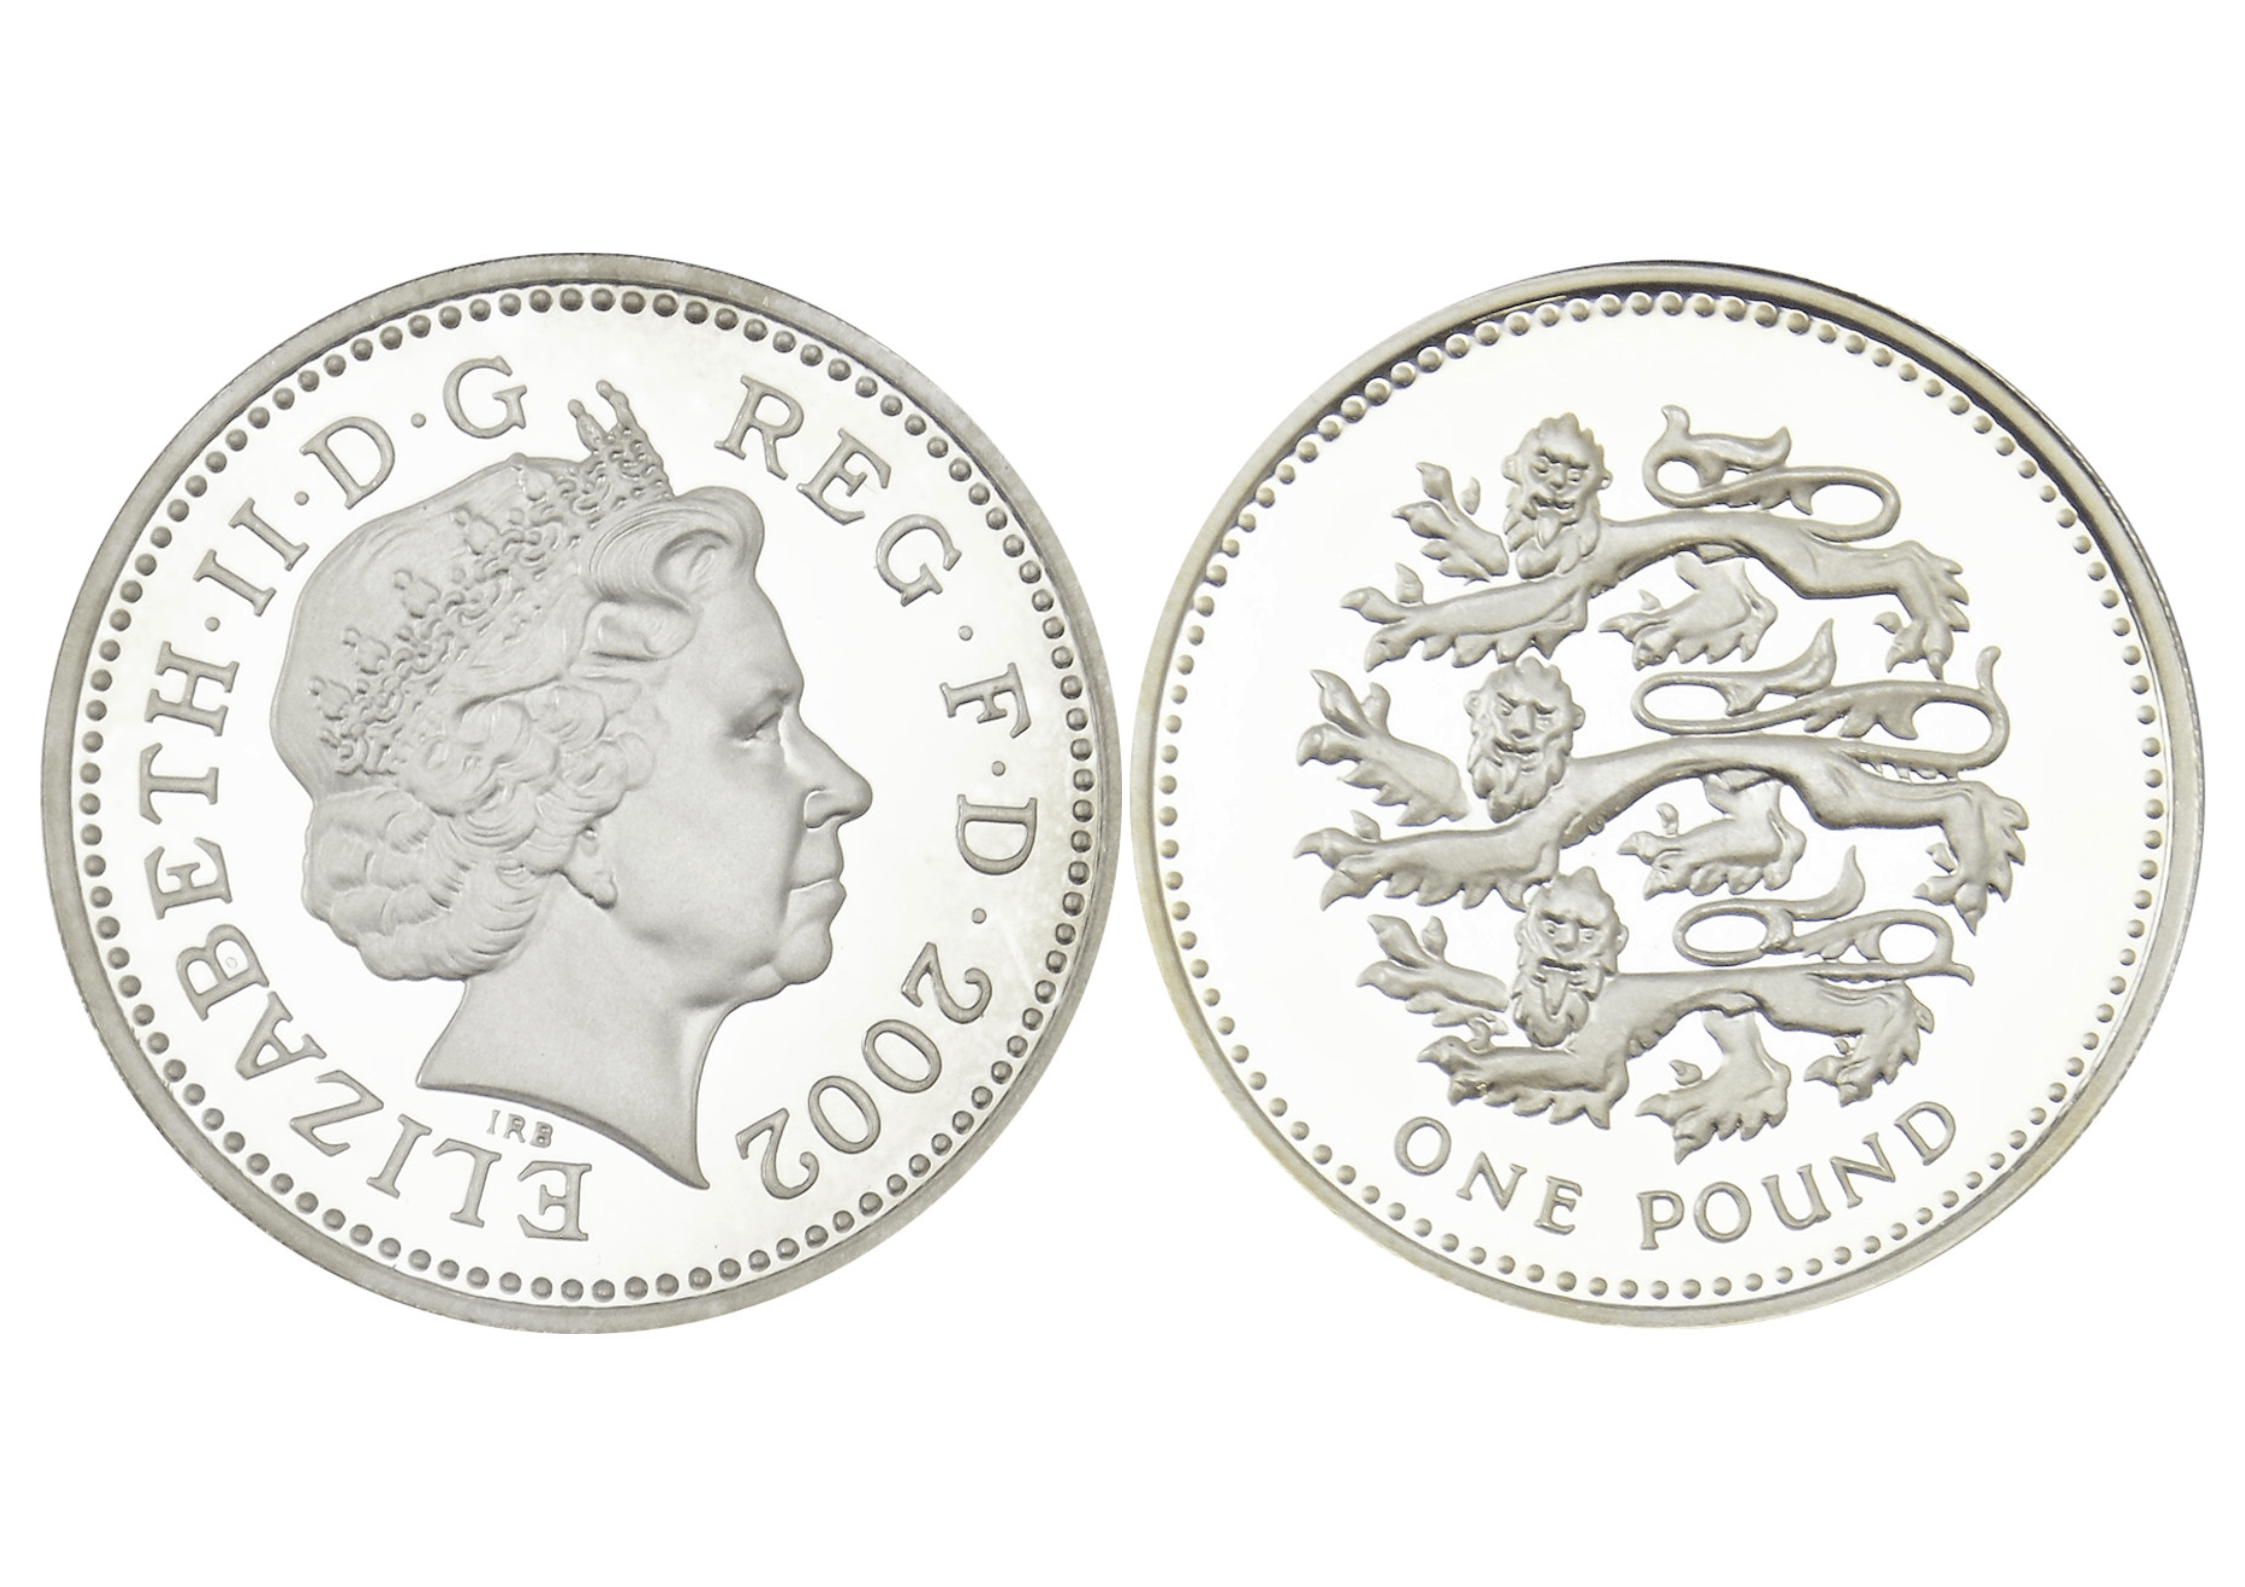 1 Silver Pound Elizabeth II 2002